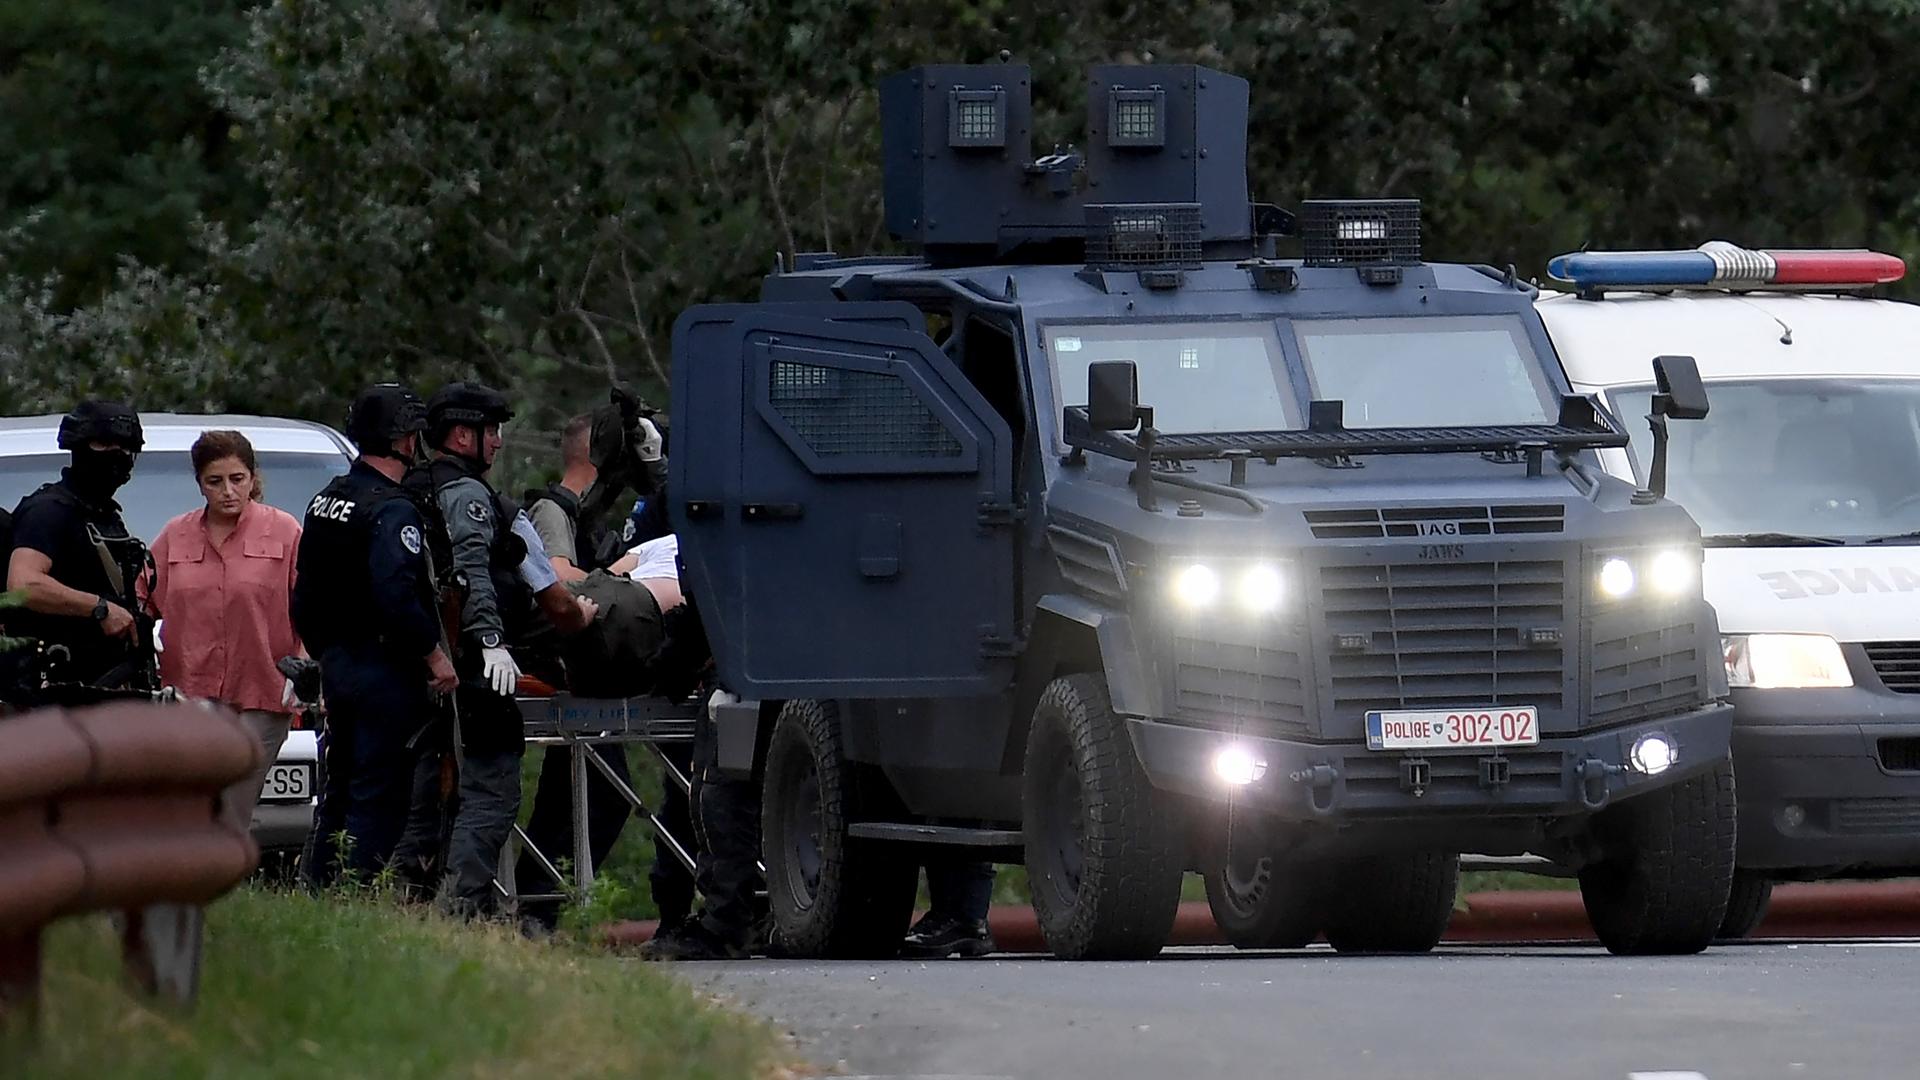 Im Schutz eines gepanzerten Polizeifahrzeugs laufen mehrere Polizisten in Kampfmontur und ein Zivilist. Daneben weitere Autos.